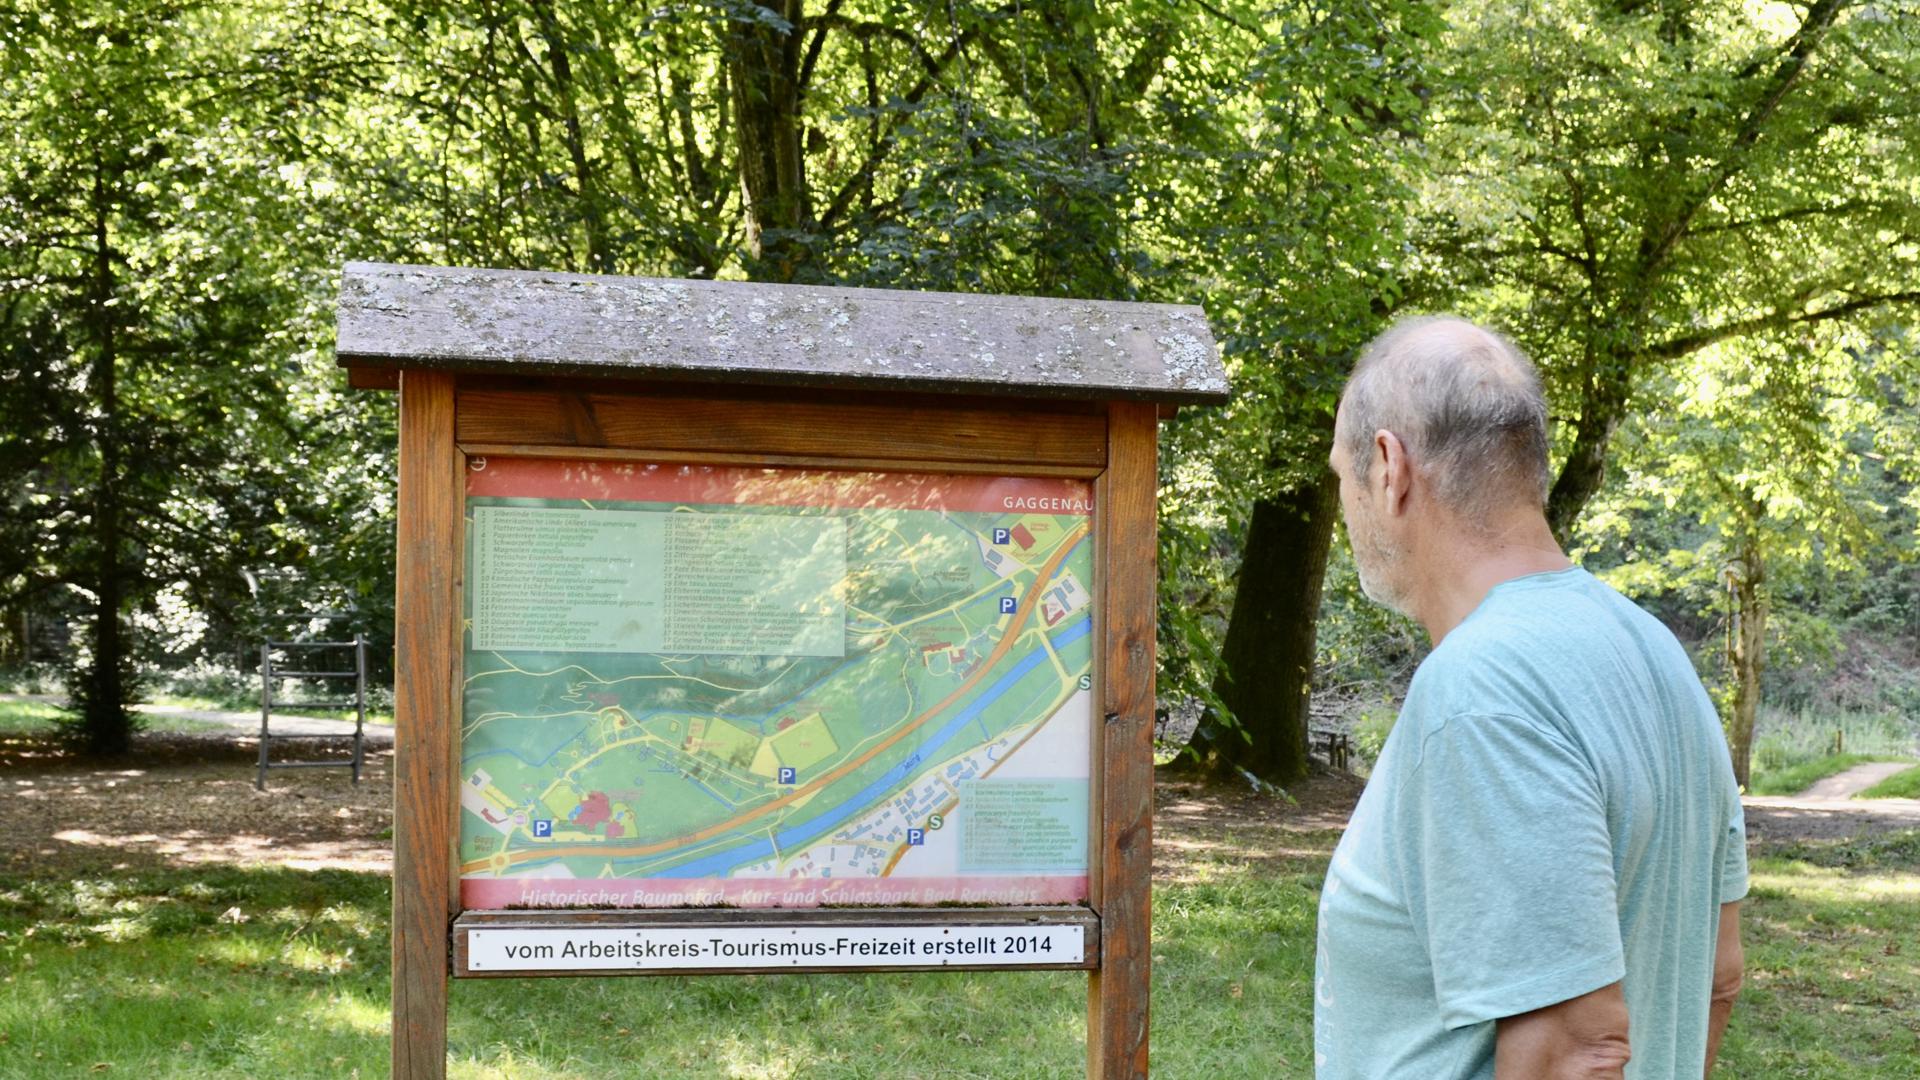 Die Stationen des Historischen Baumpfads im Kurpark Bad Rotenfels sind schon mit Schildern ausgestattet, auf denen ein QR-Code abgescannt werden kann. Die Übersichtstafel muss noch auf den neuesten Stand gebracht werden.